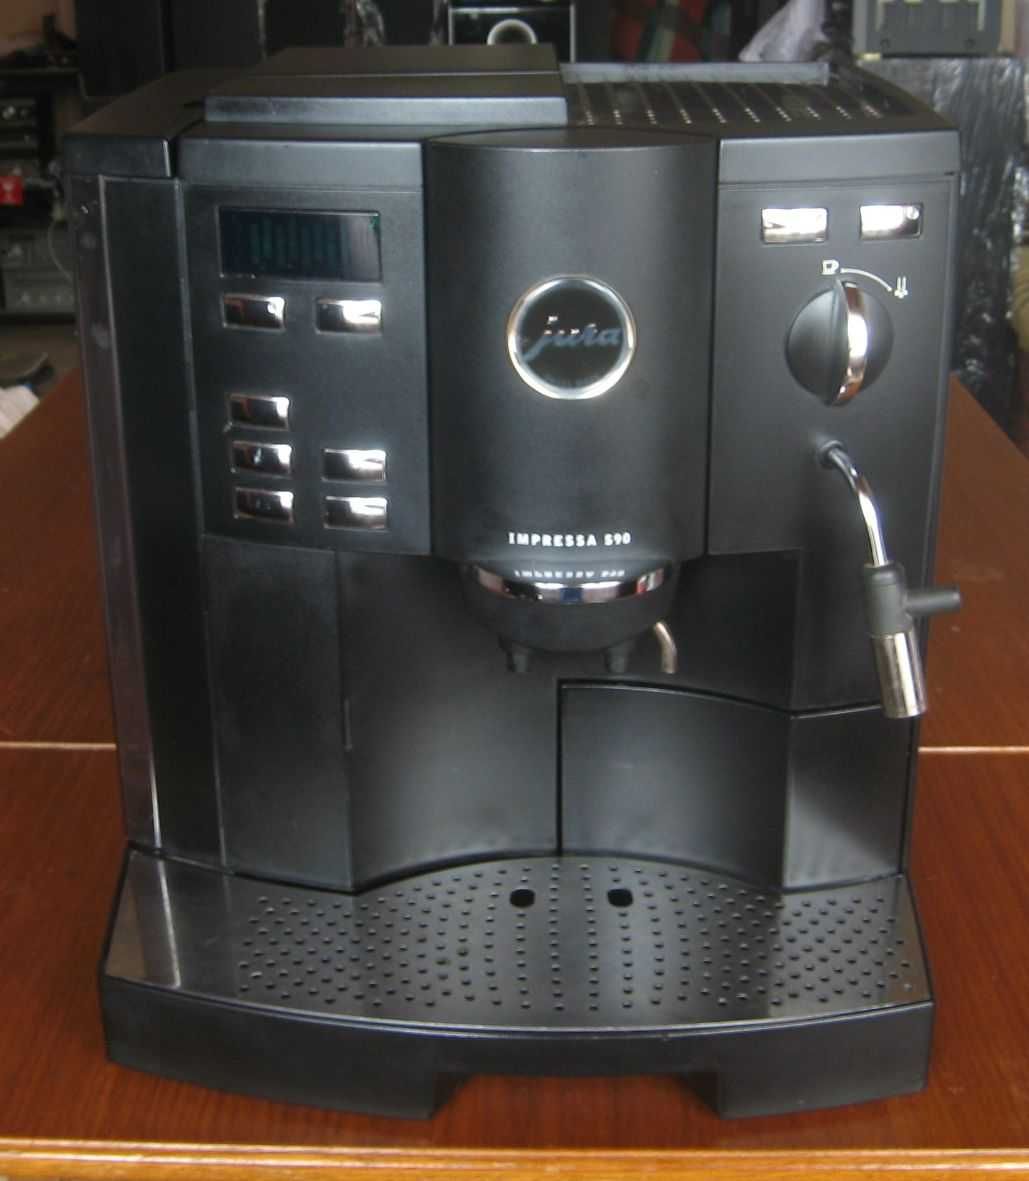 Ekspres do kawy Jura Impressa S90 sprawny po przeglądzie i czyszczeniu